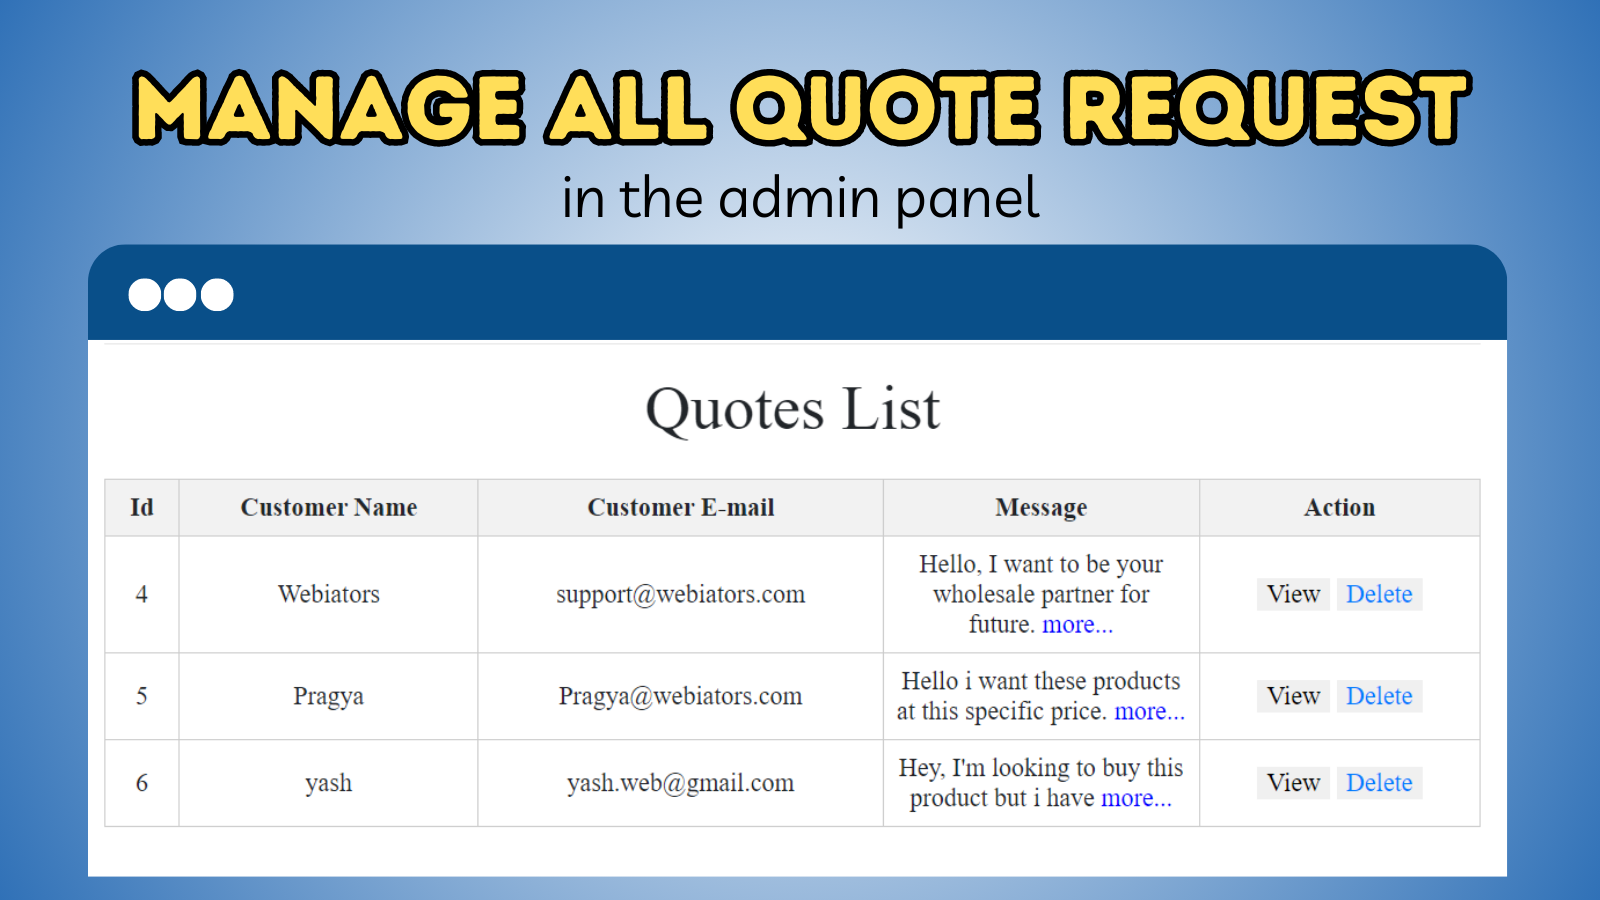 Verwalten Sie alle Angebotsanfragen im Admin-Panel